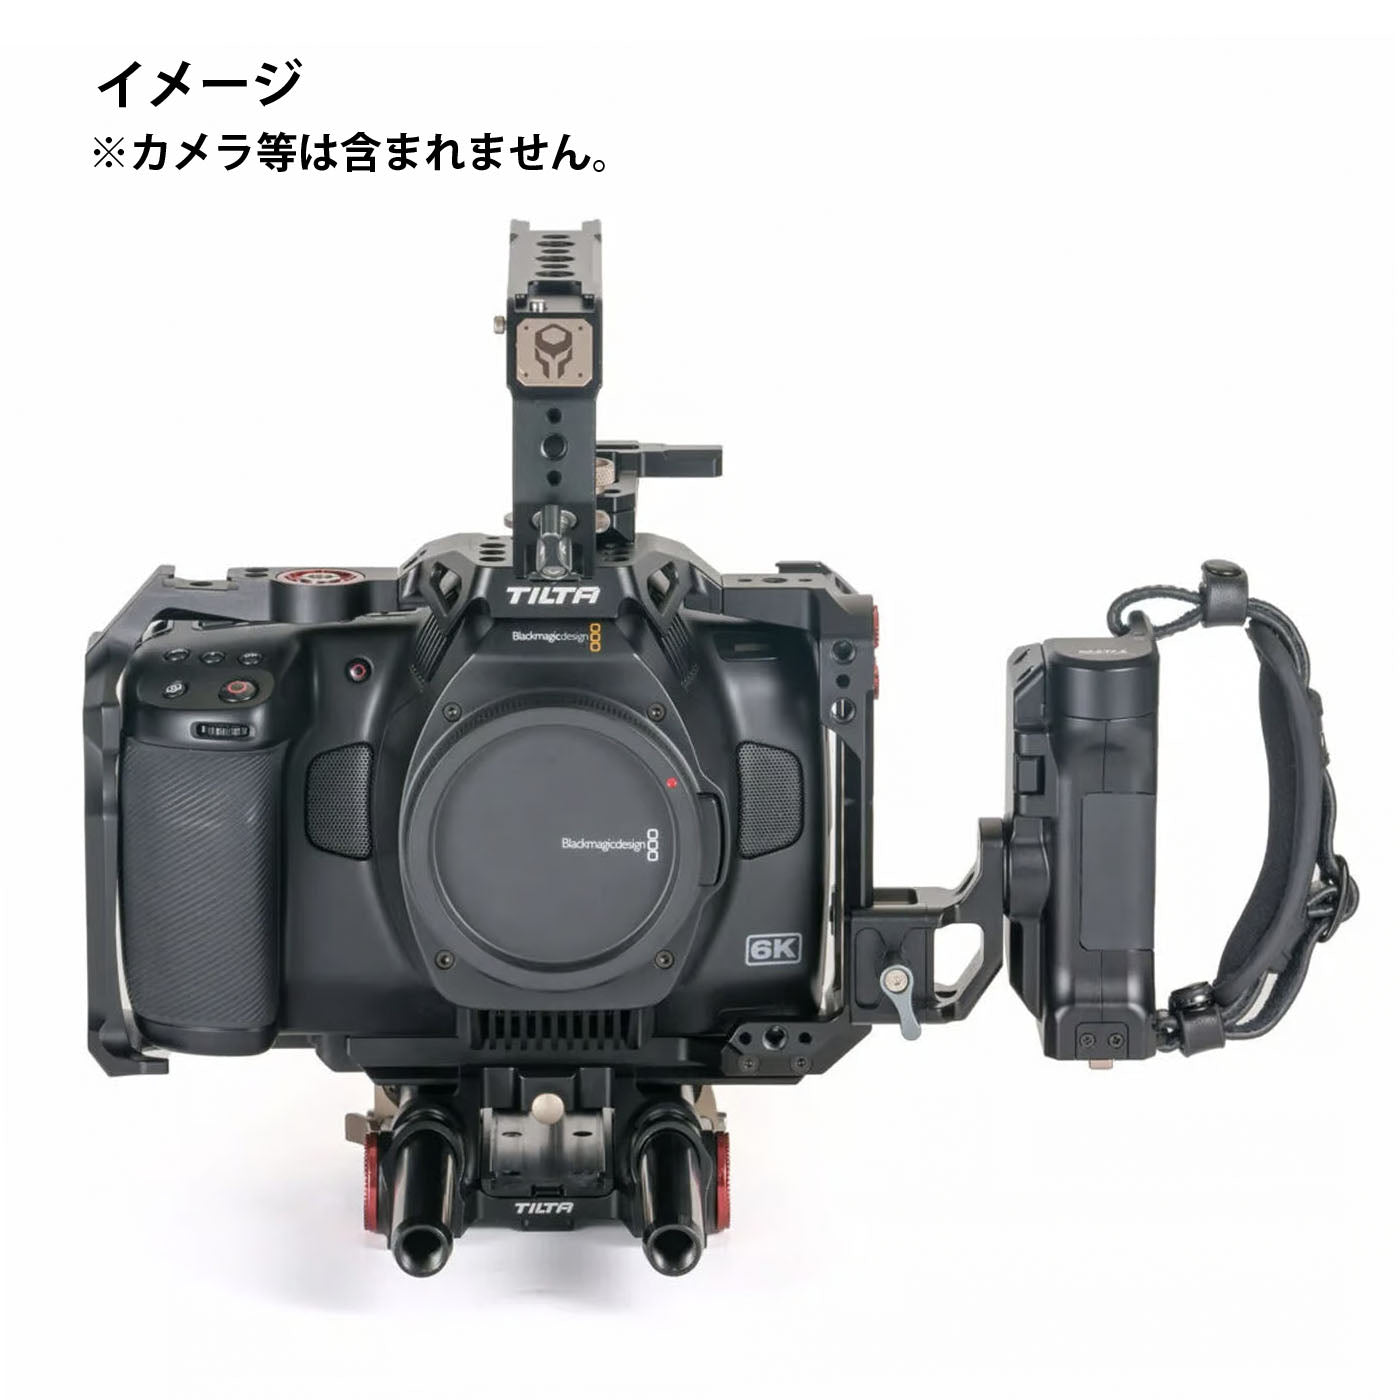 TILTA(ティルタ) Advanced kit for BMPCC 6K Pro Black TA-T11-A-B